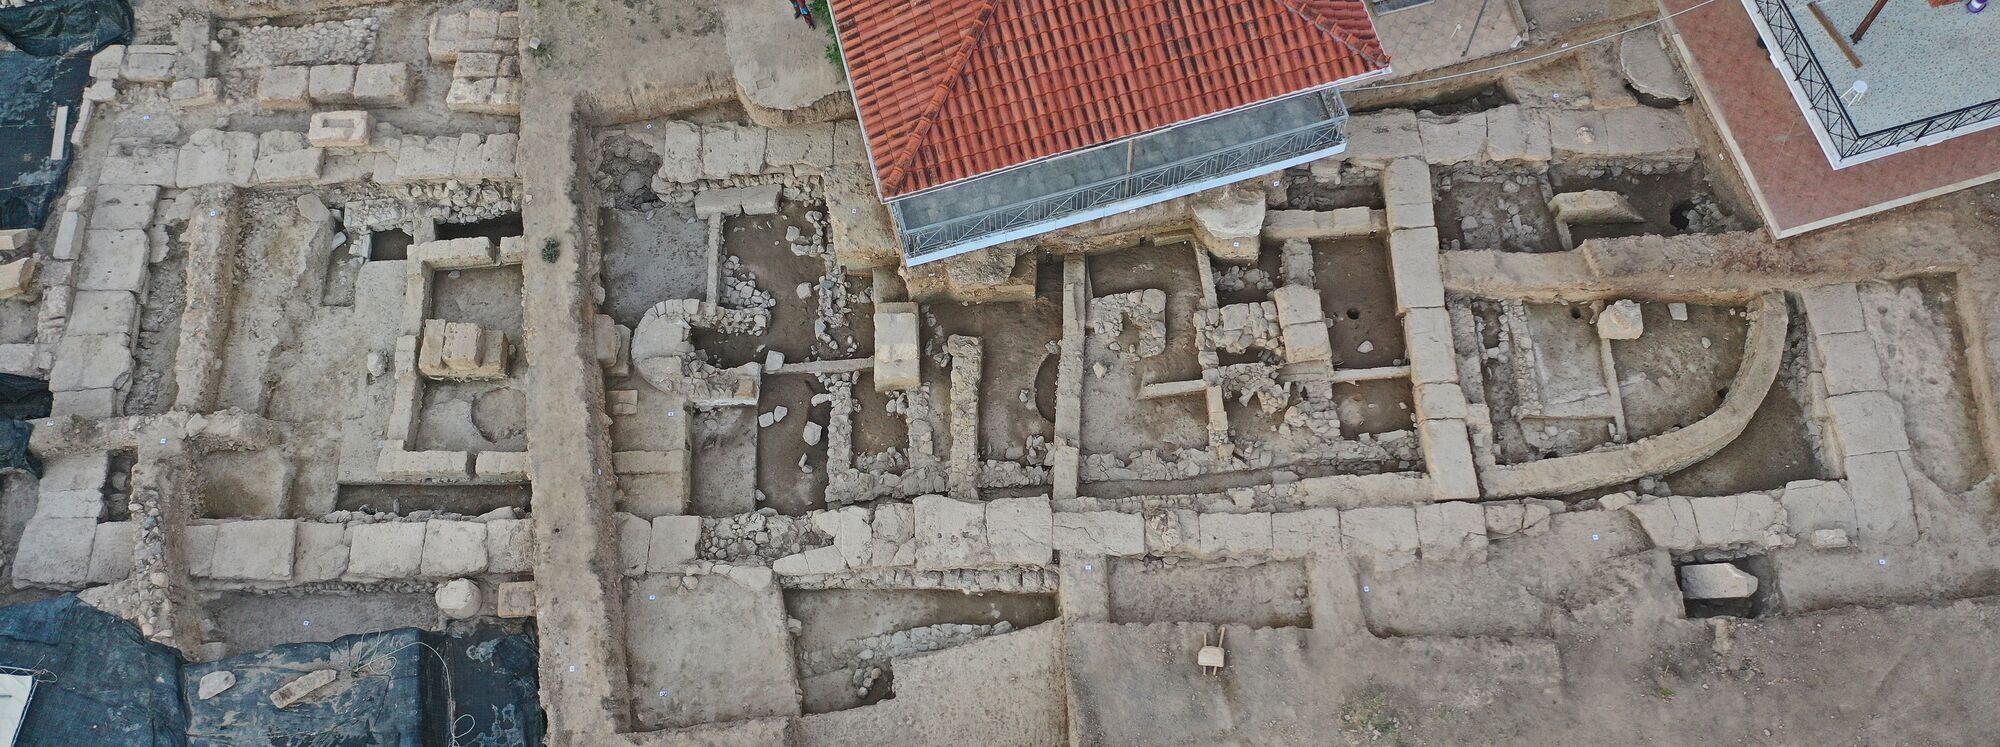 У Греції археологи знайшли 2700-річний храм, усипаний коштовностями (фото)